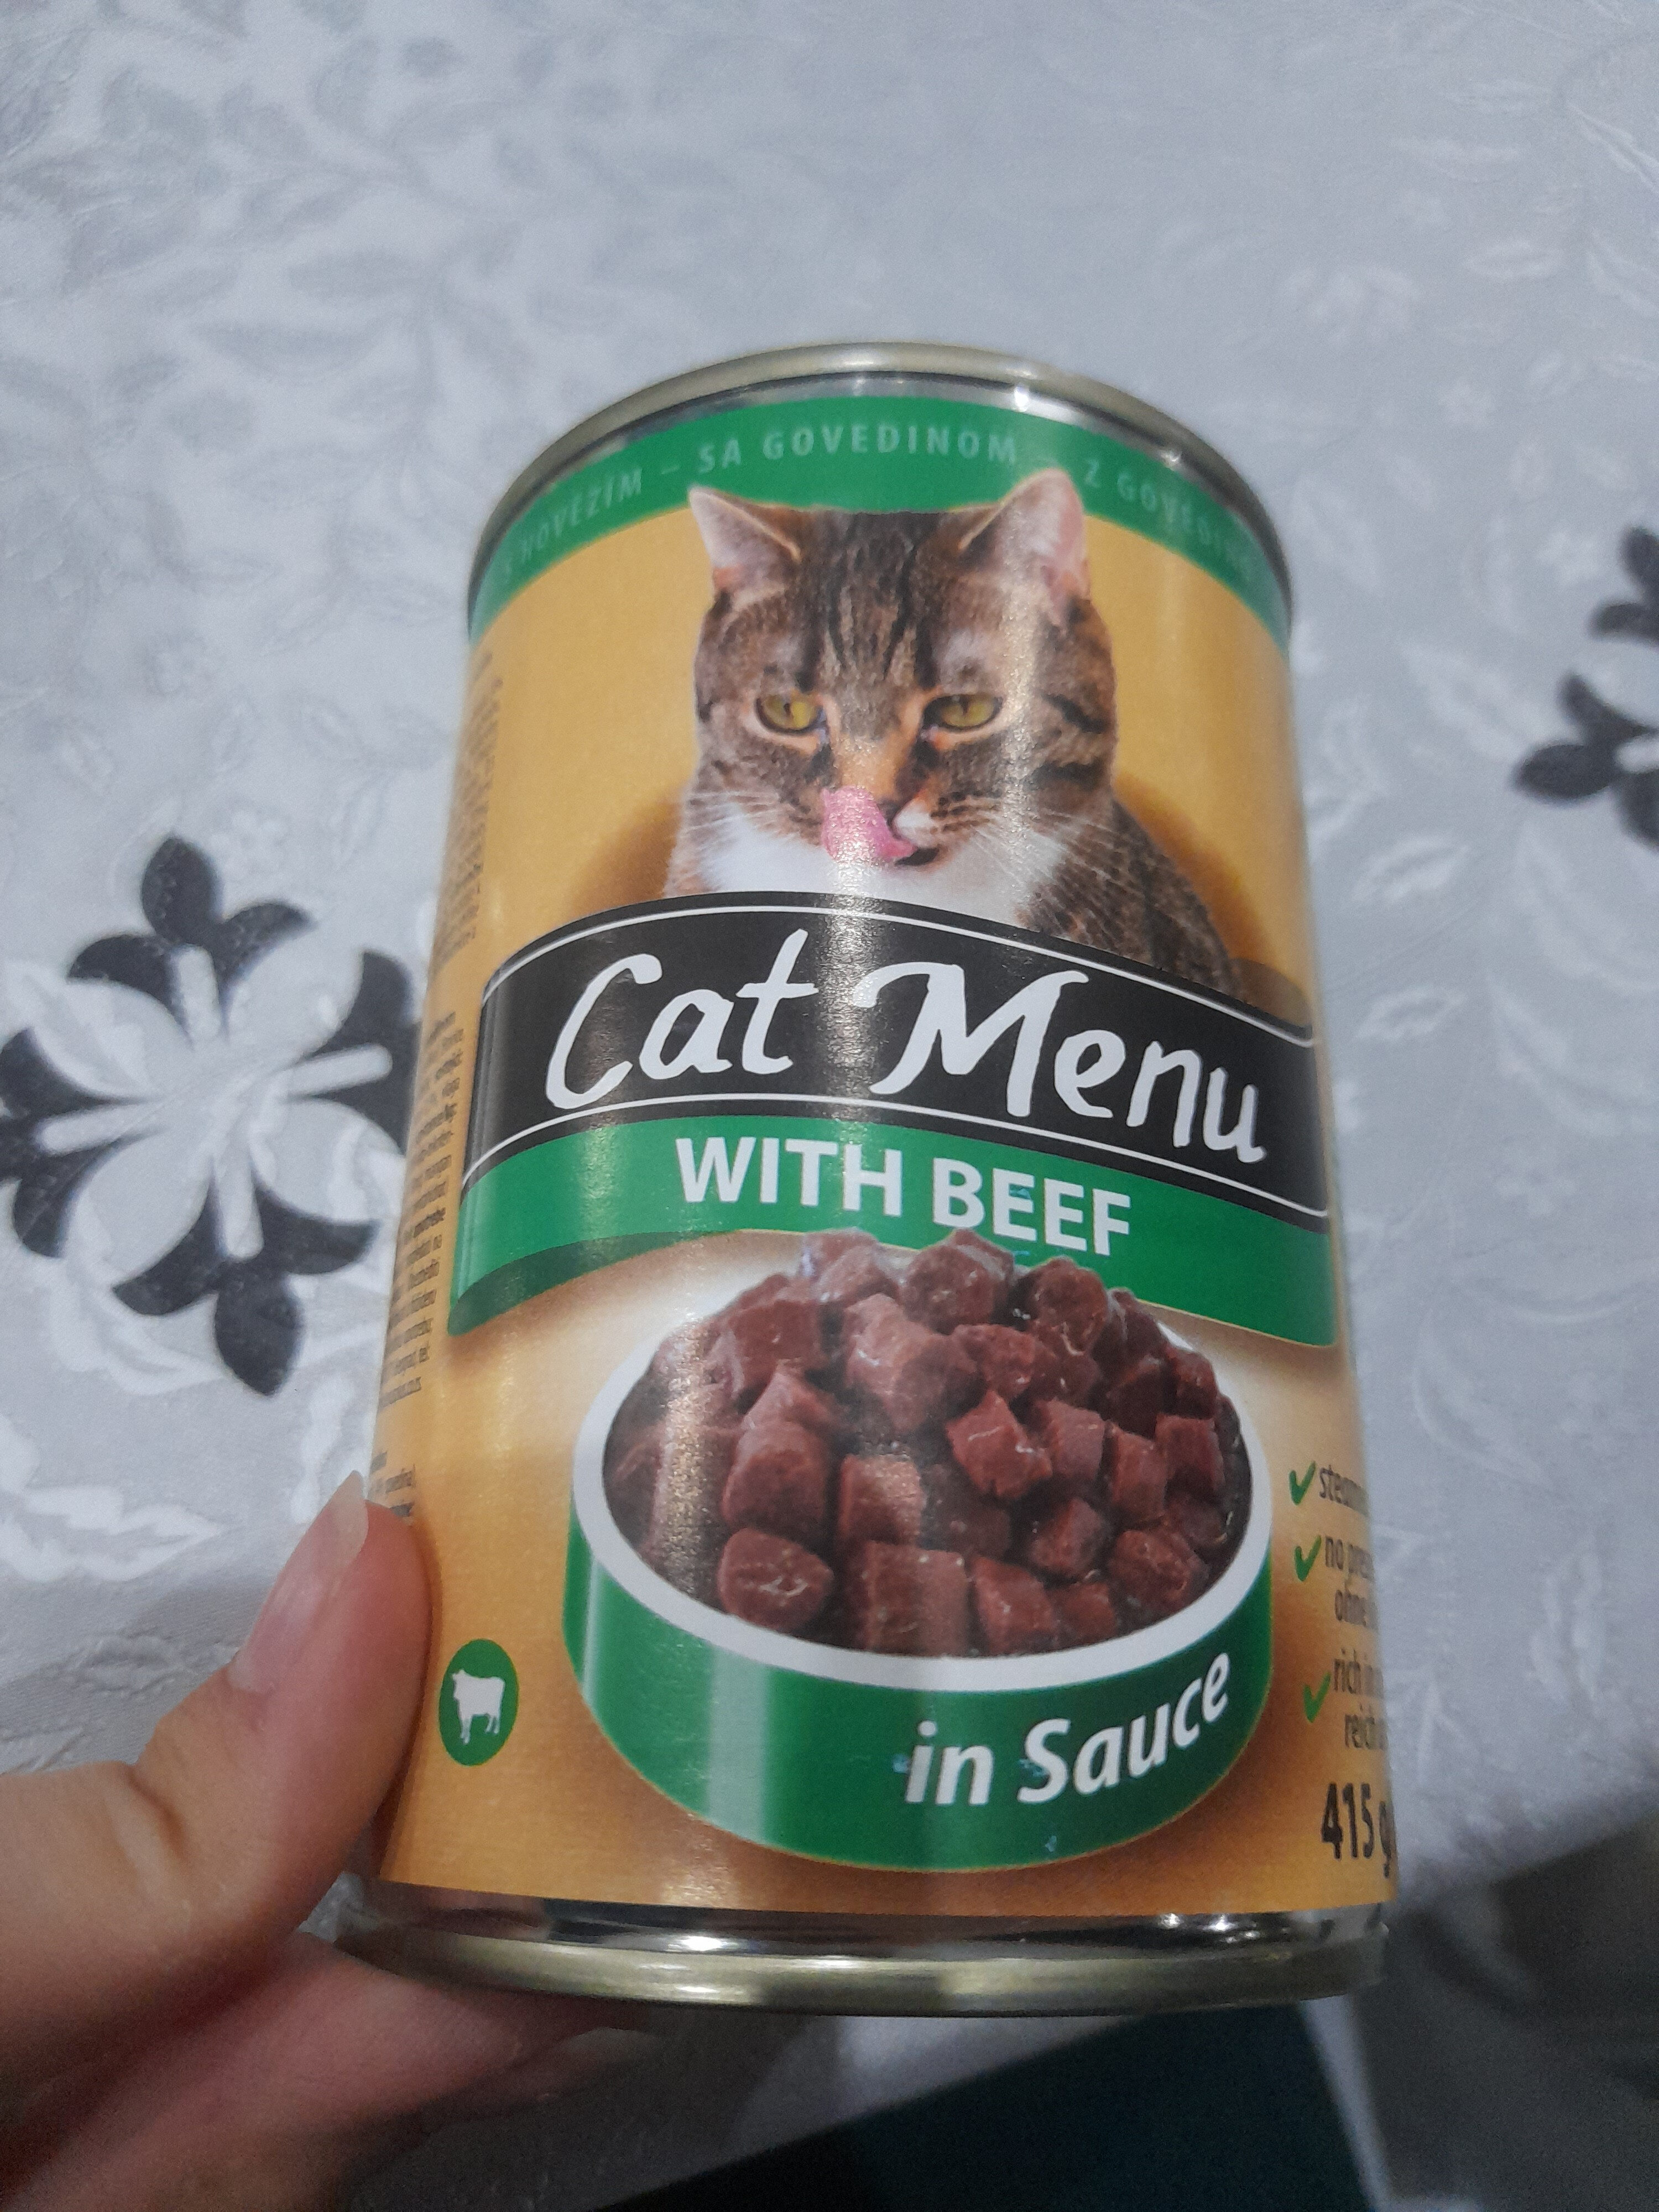 cat menu with beef in sauce - Product - en